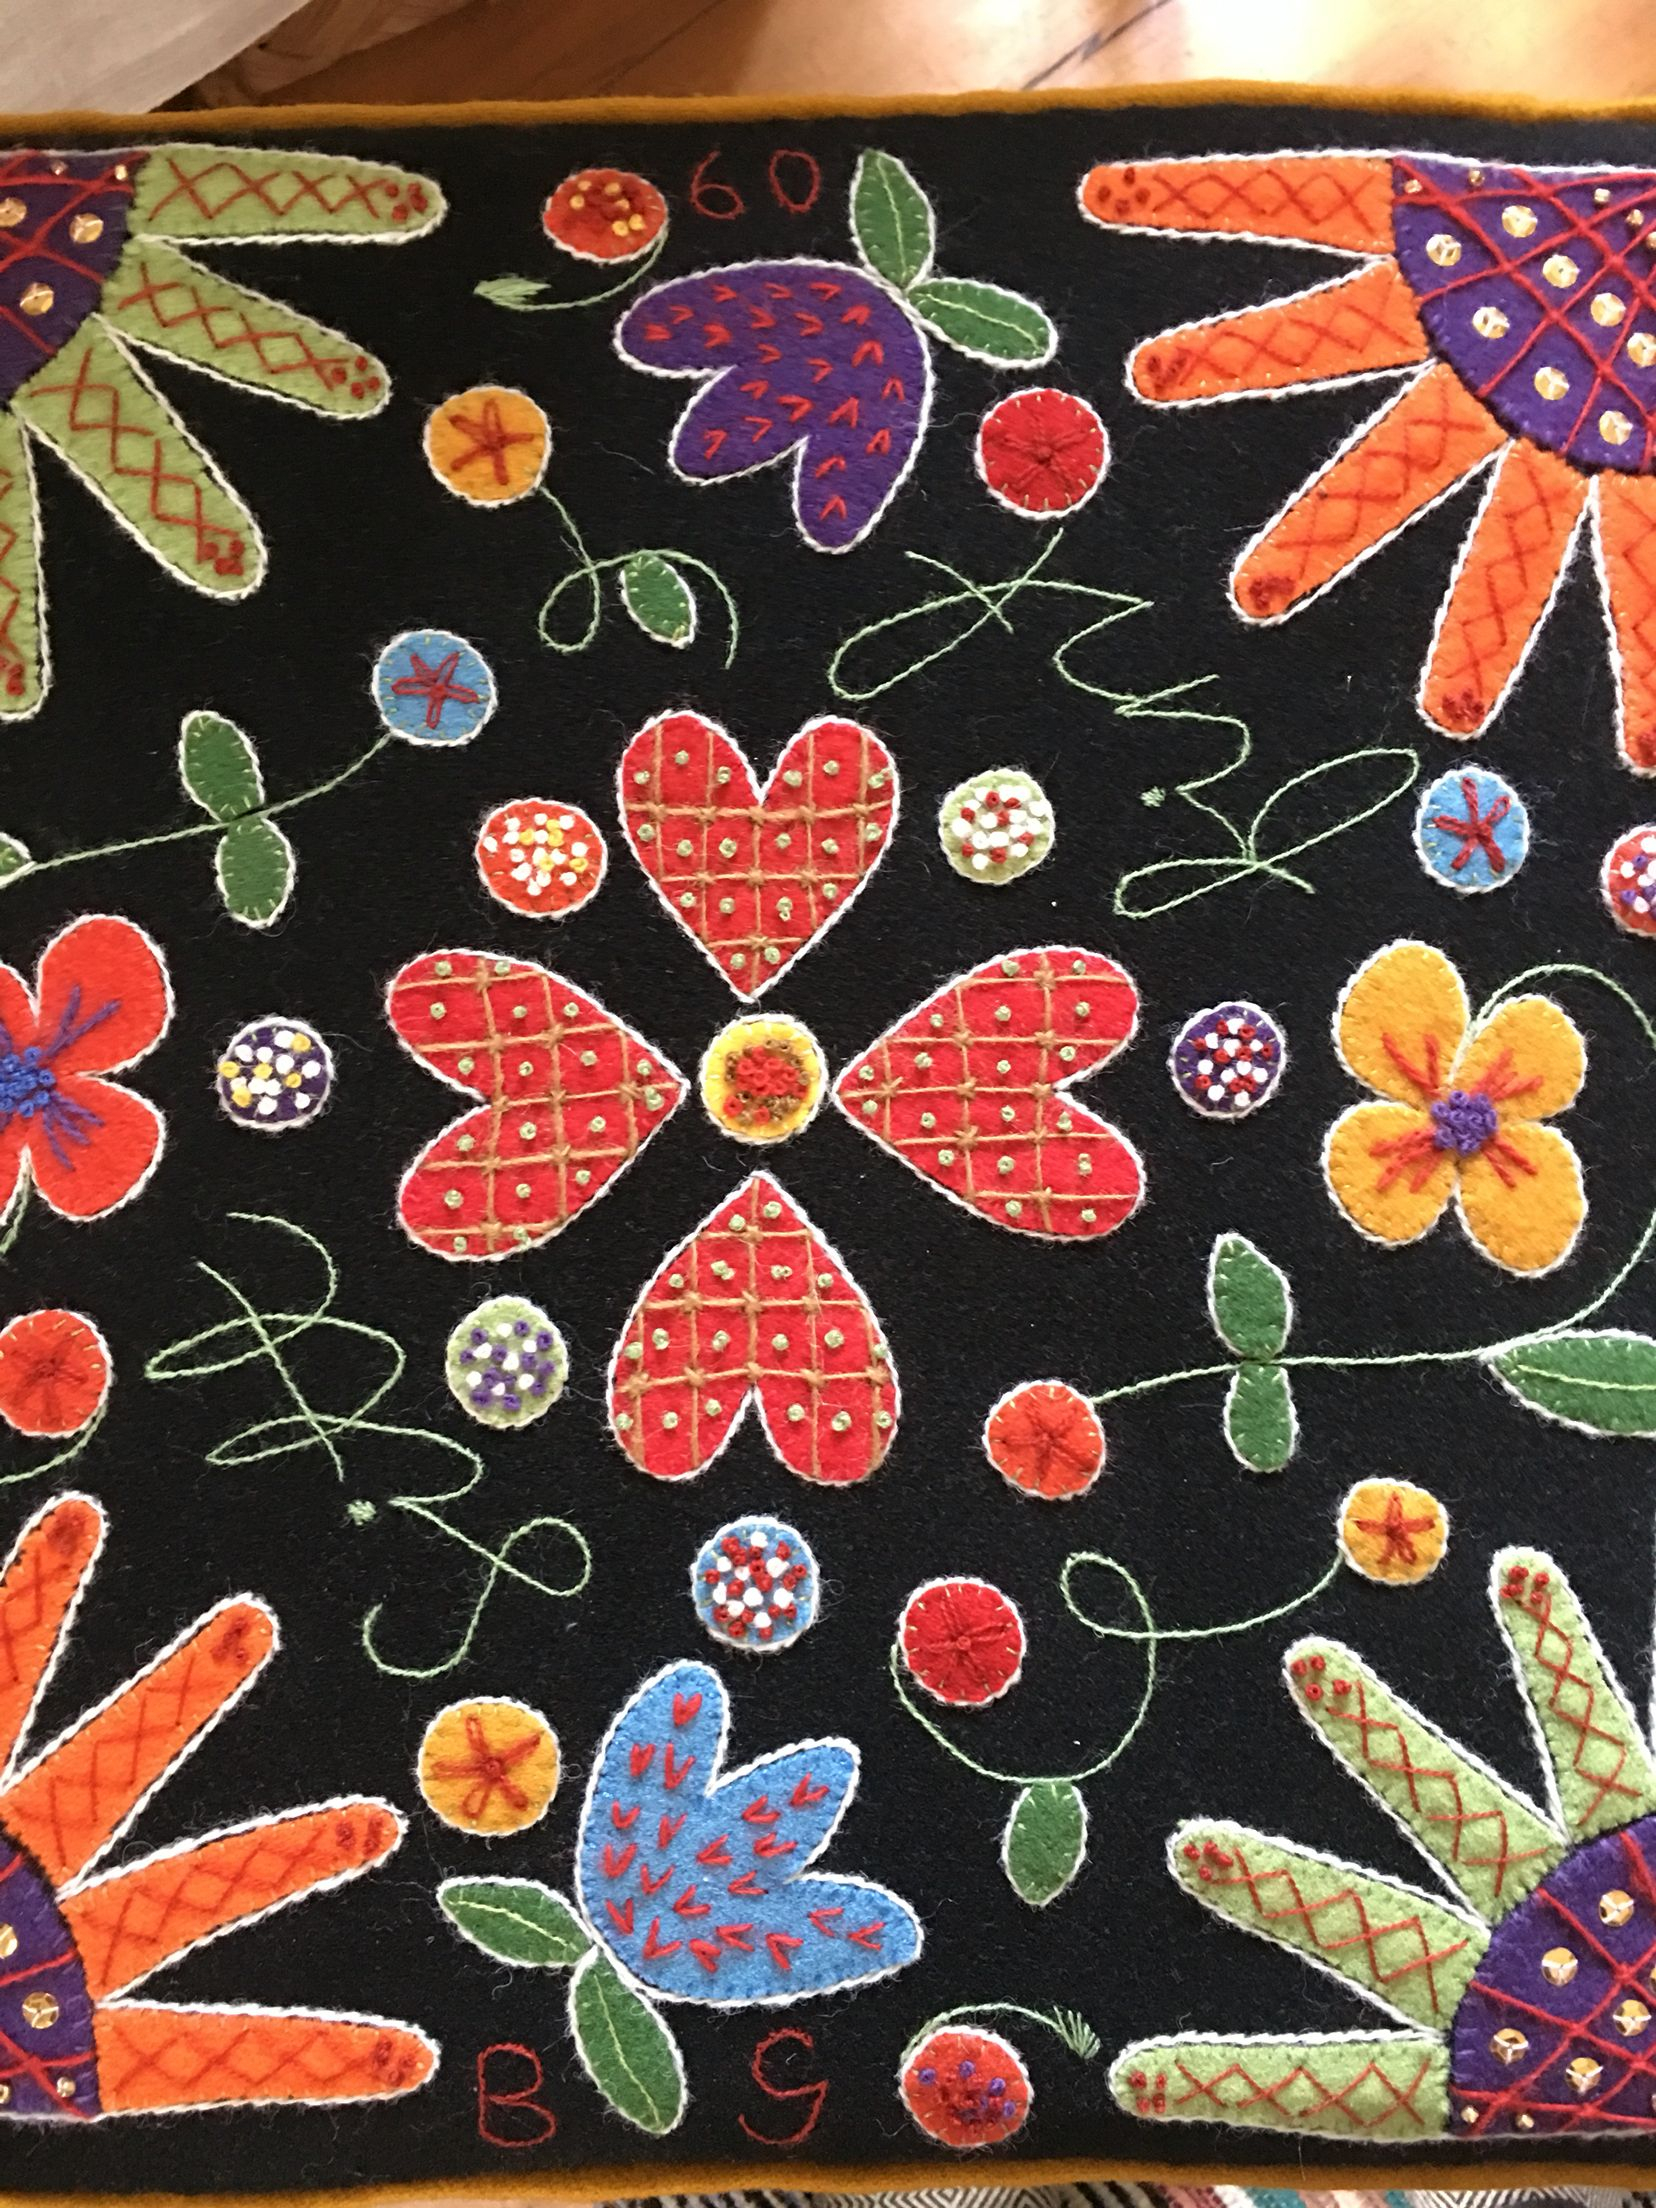 Felt Embroidery Patterns C2e21 Elviira Villa Rekipeittokirjonta Suomi Villas And